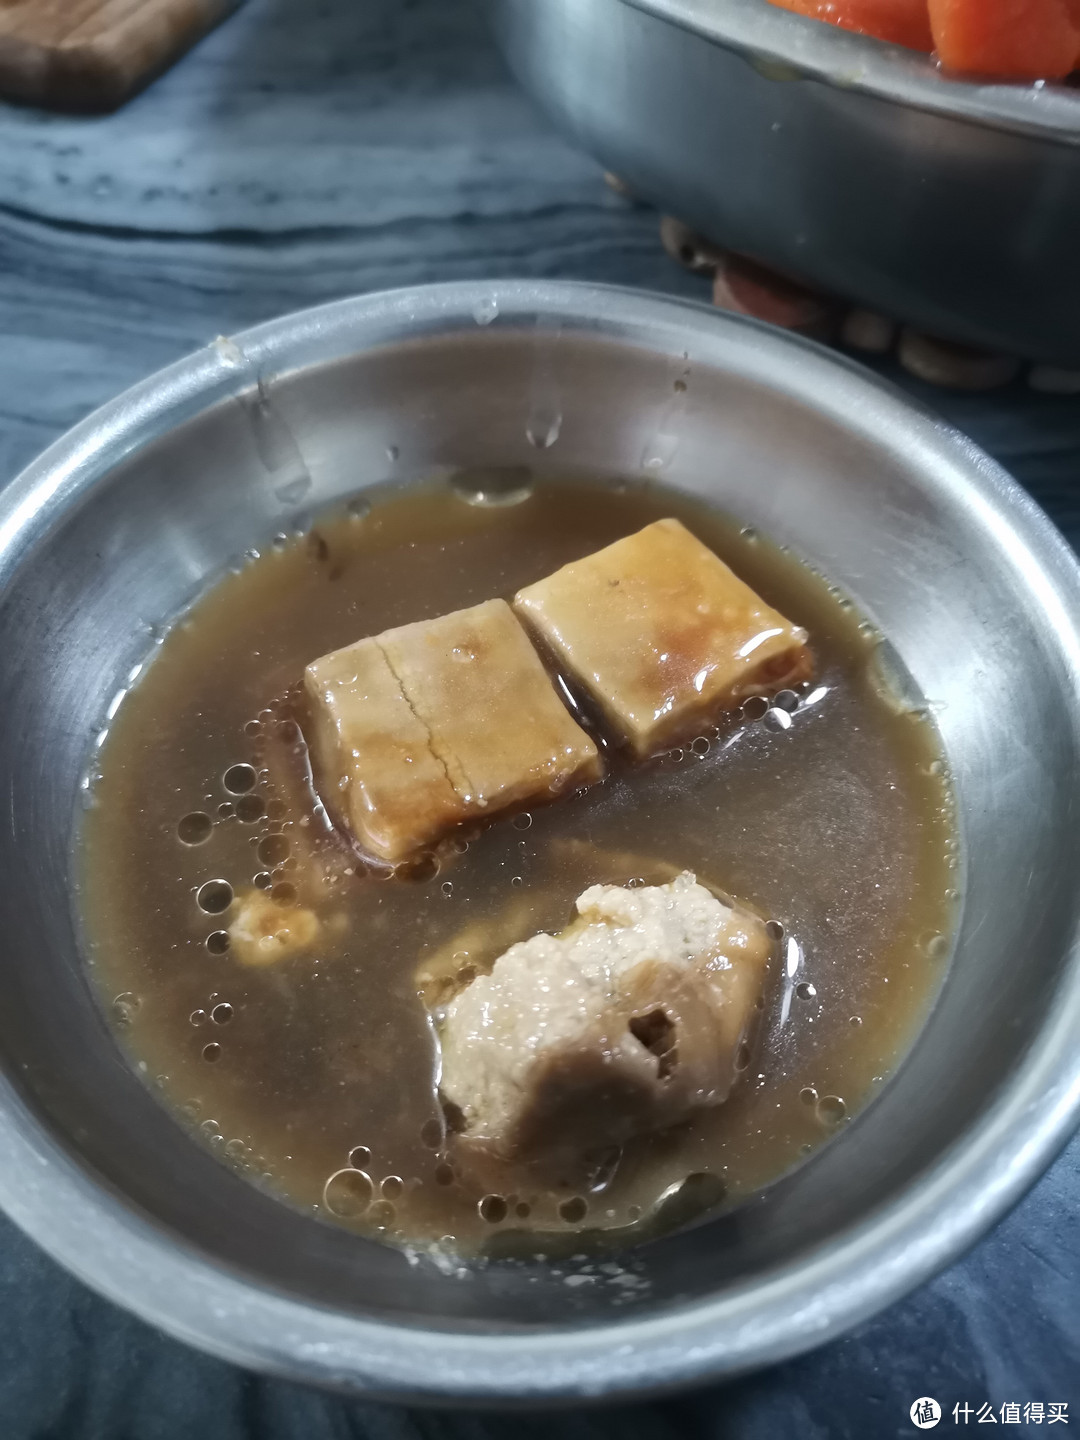 豆腐乳+汤汁+豉油，拌均匀作为蘸料